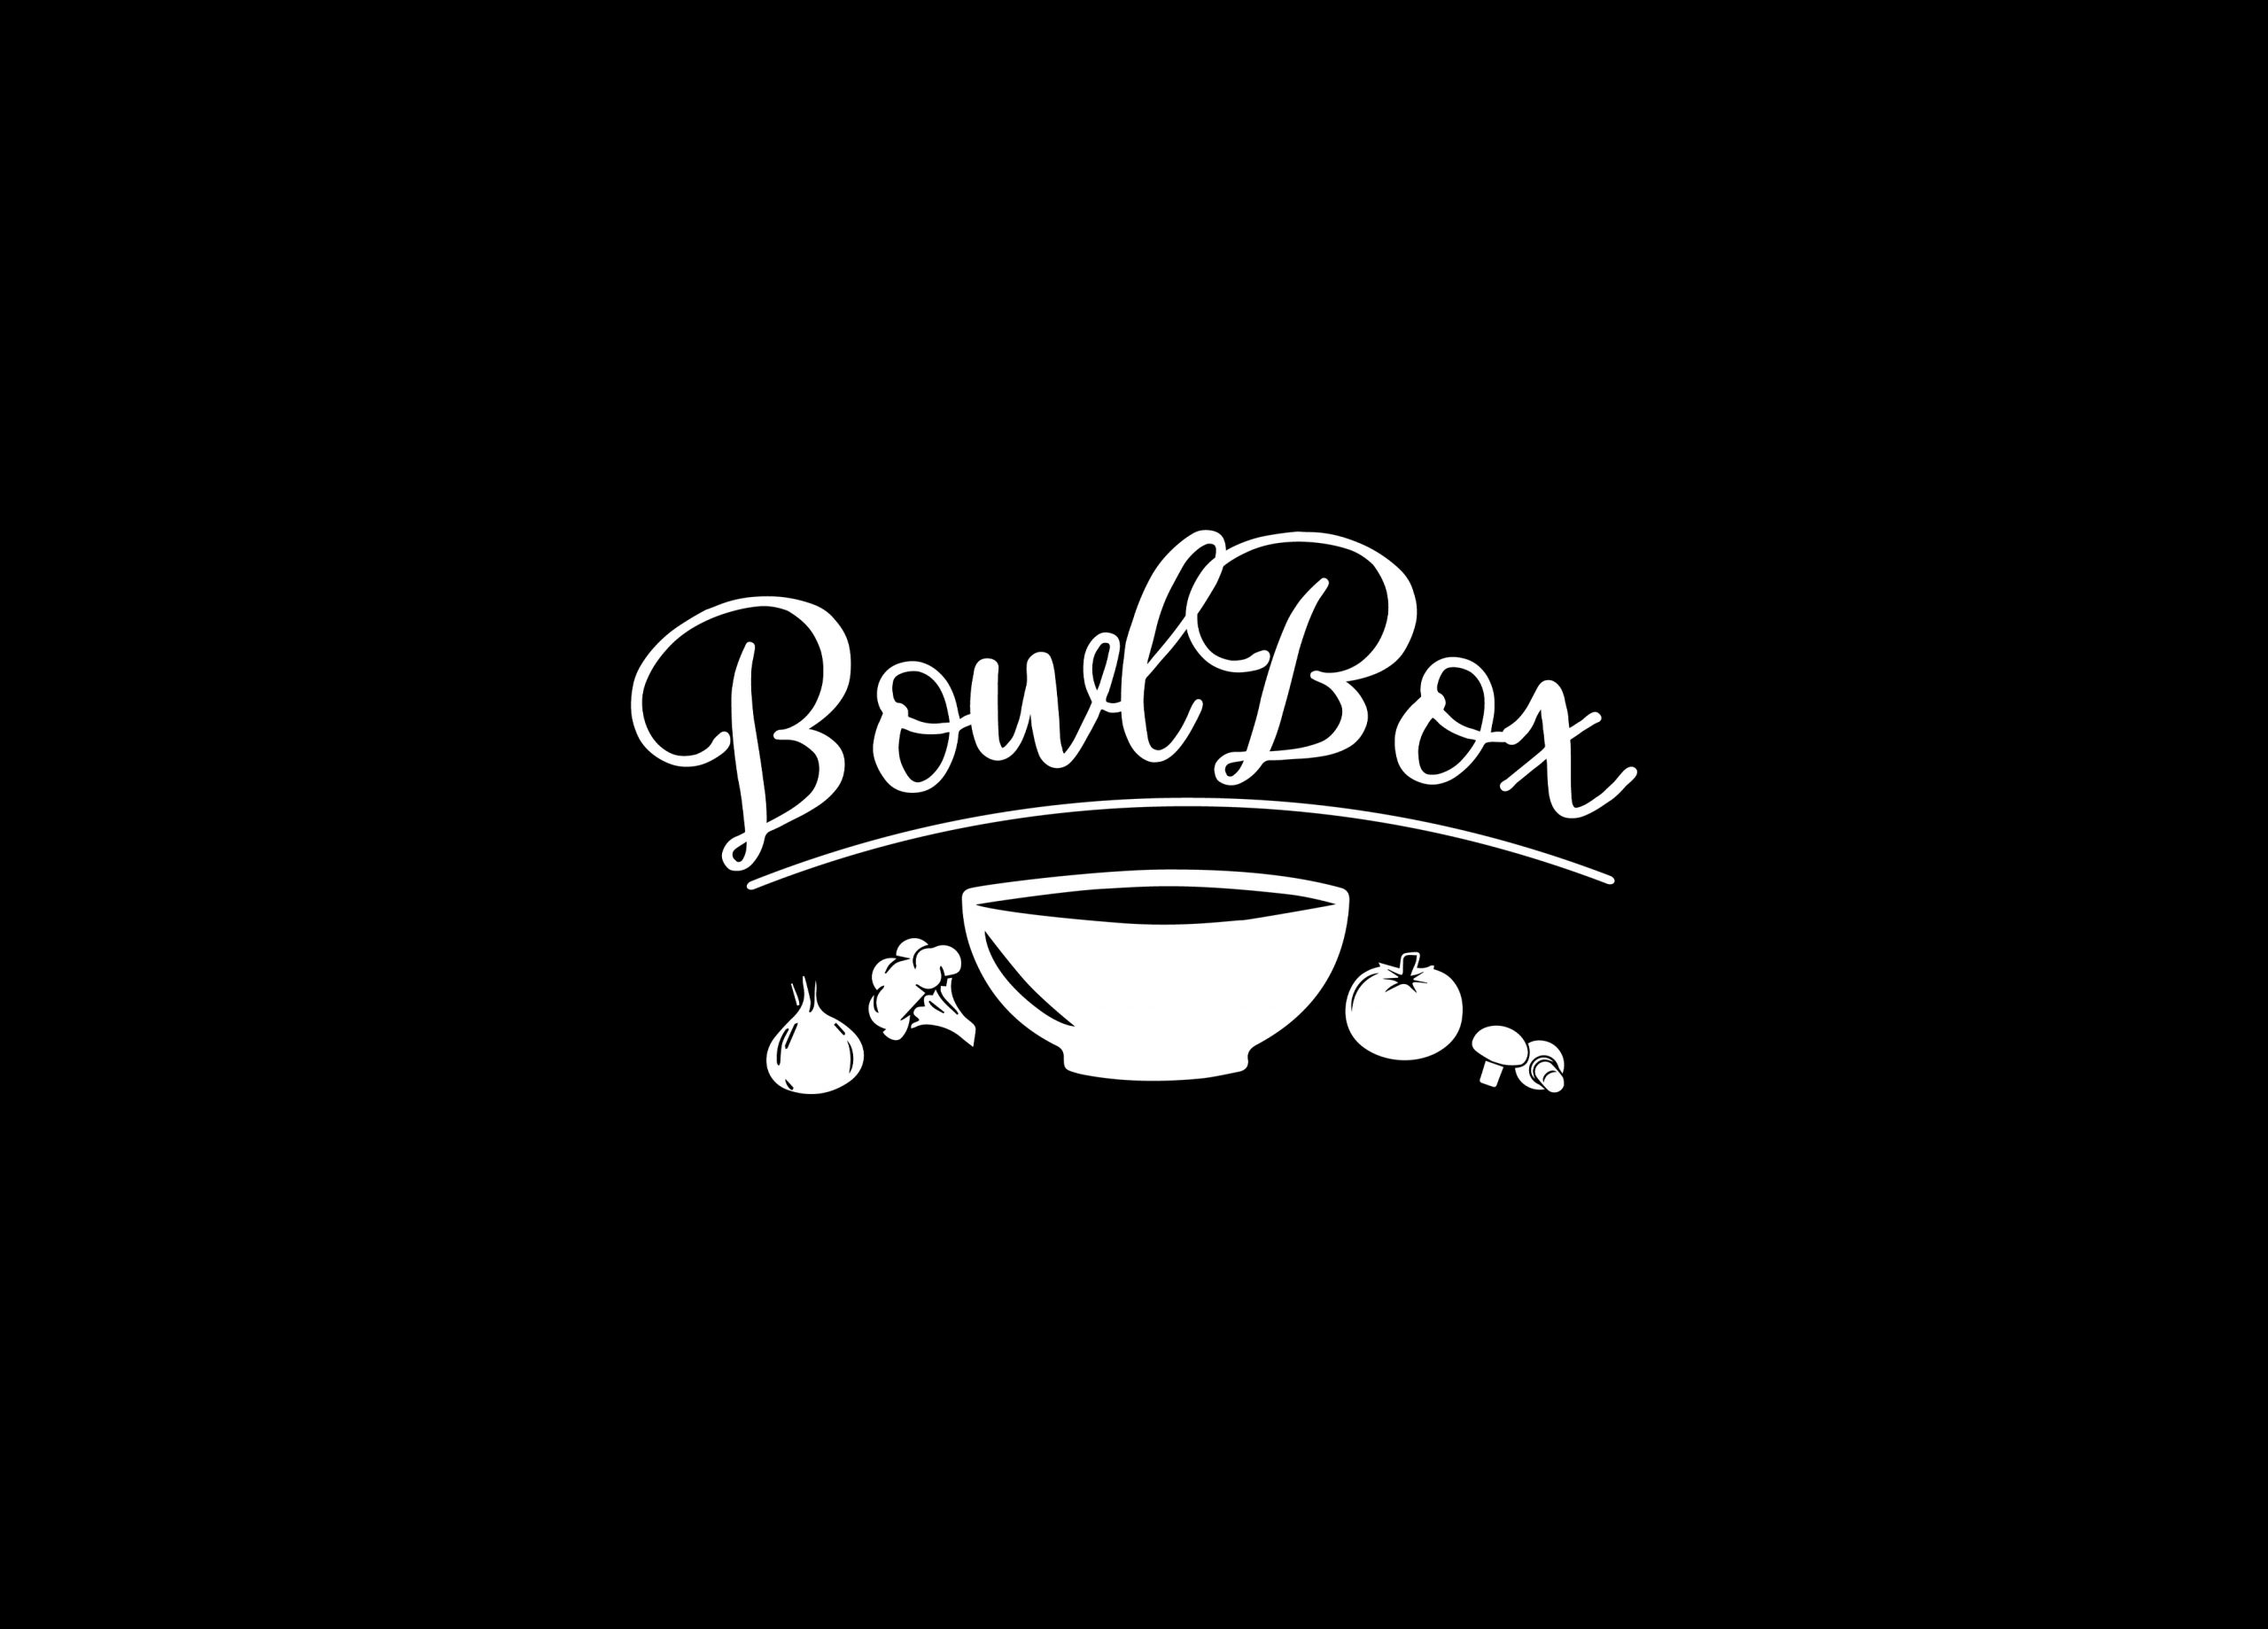 Logo Bowl Box.